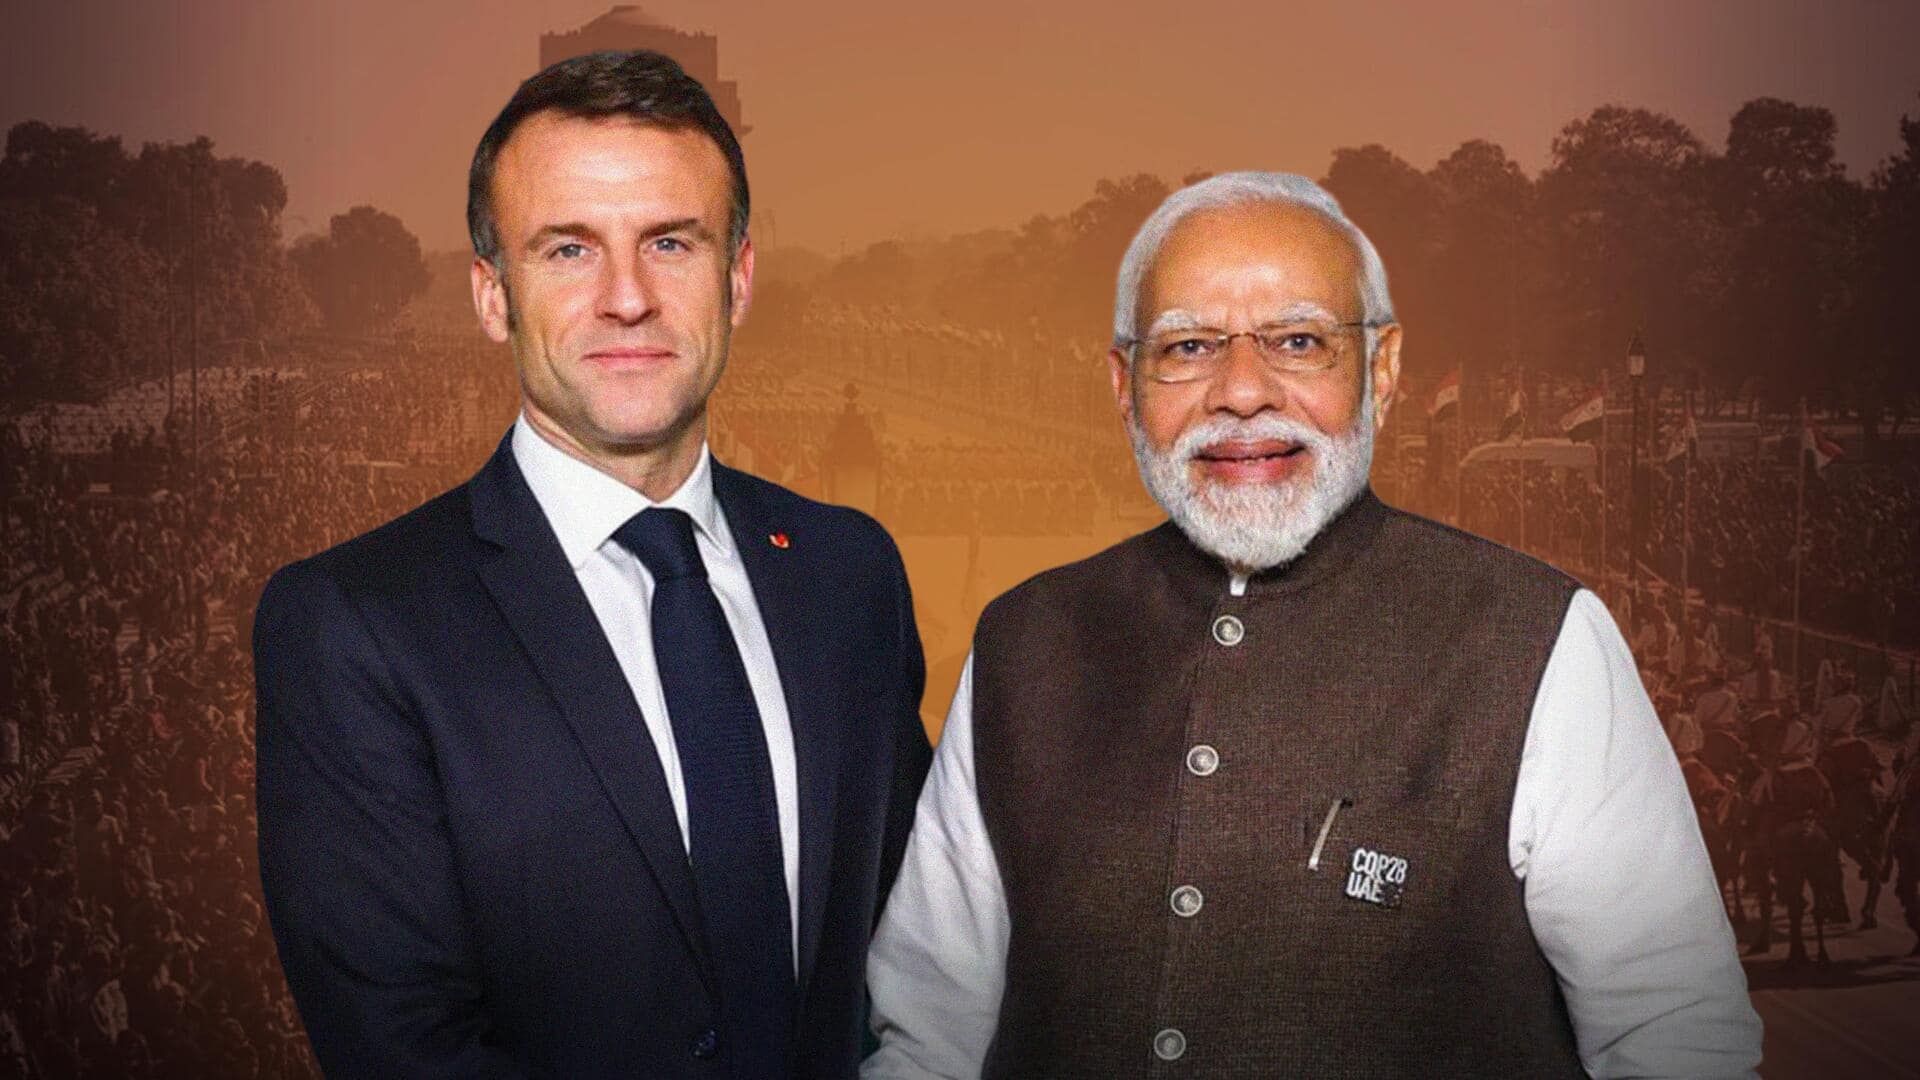 गणतंत्र दिवस के मुख्य अतिथि फ्रांस के राष्ट्रपति मैक्रों आएंगे भारत, जानें क्या है तैयारी 